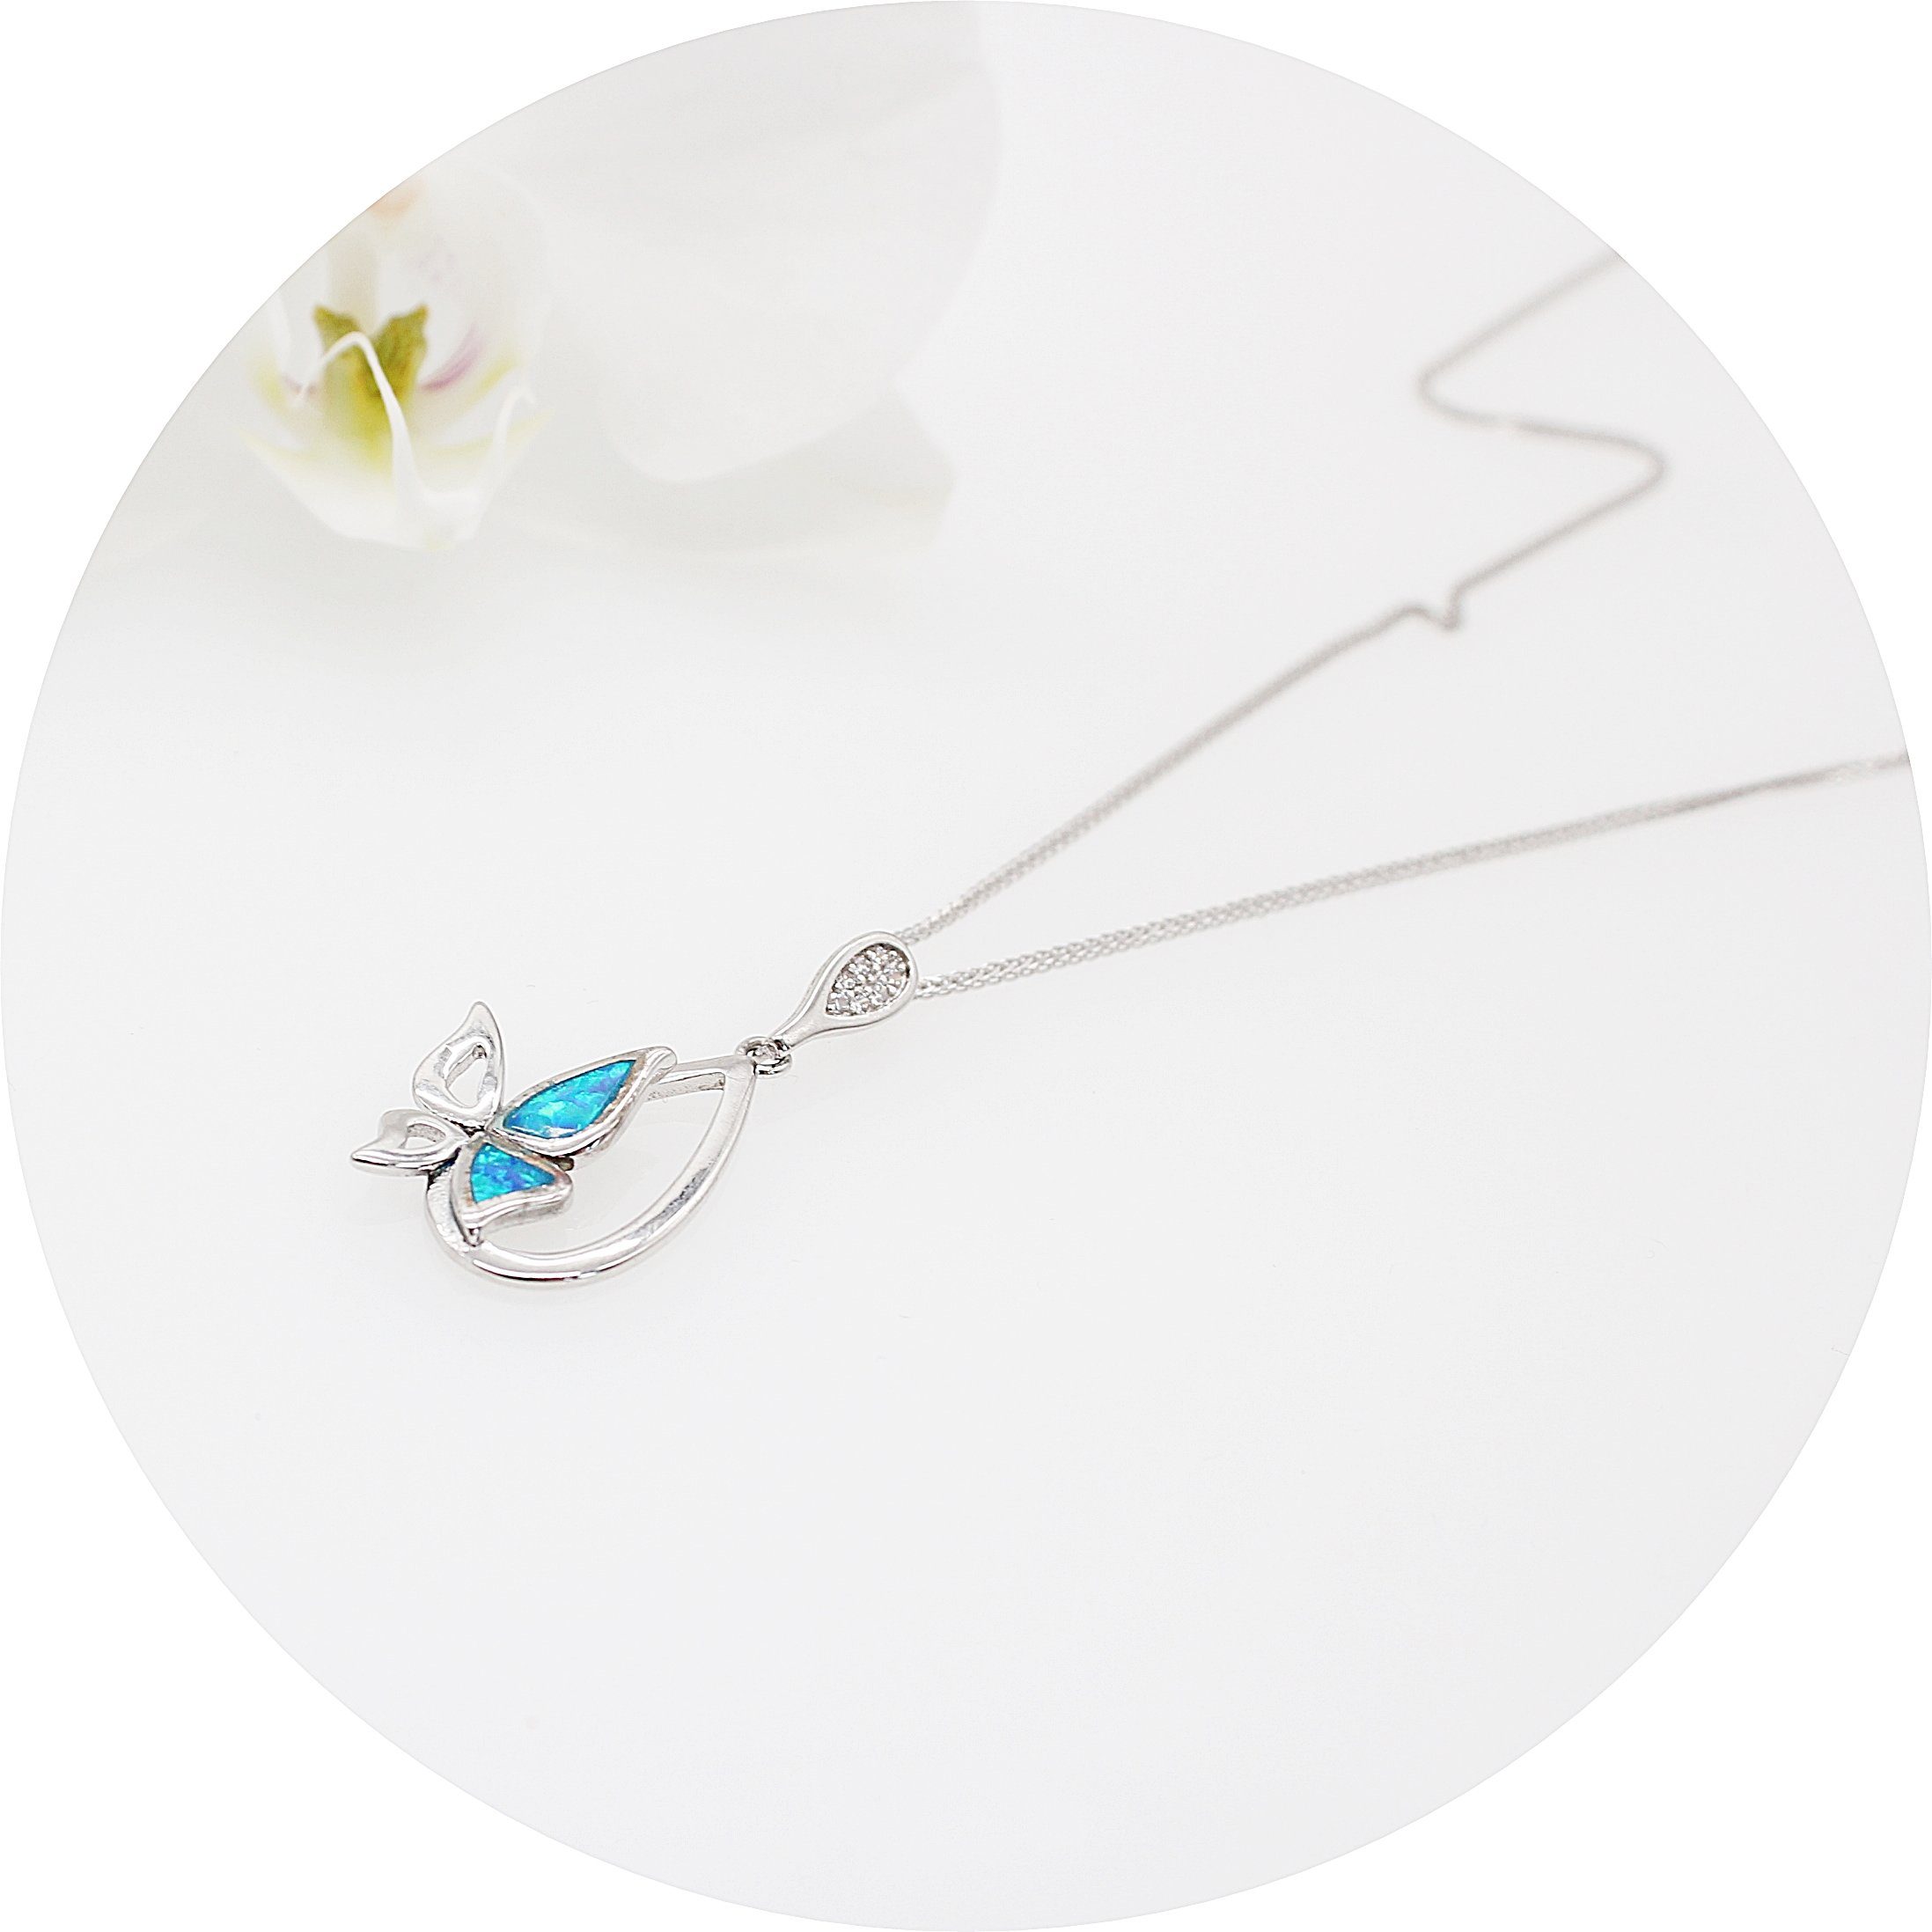 ELLAWIL Silberkette Kette mit Schmetterlings Anhänger Zirkonia Halskette Türkis (Kettenlänge 40 cm, Sterling Silber 925), inklusive Geschenkschachtel